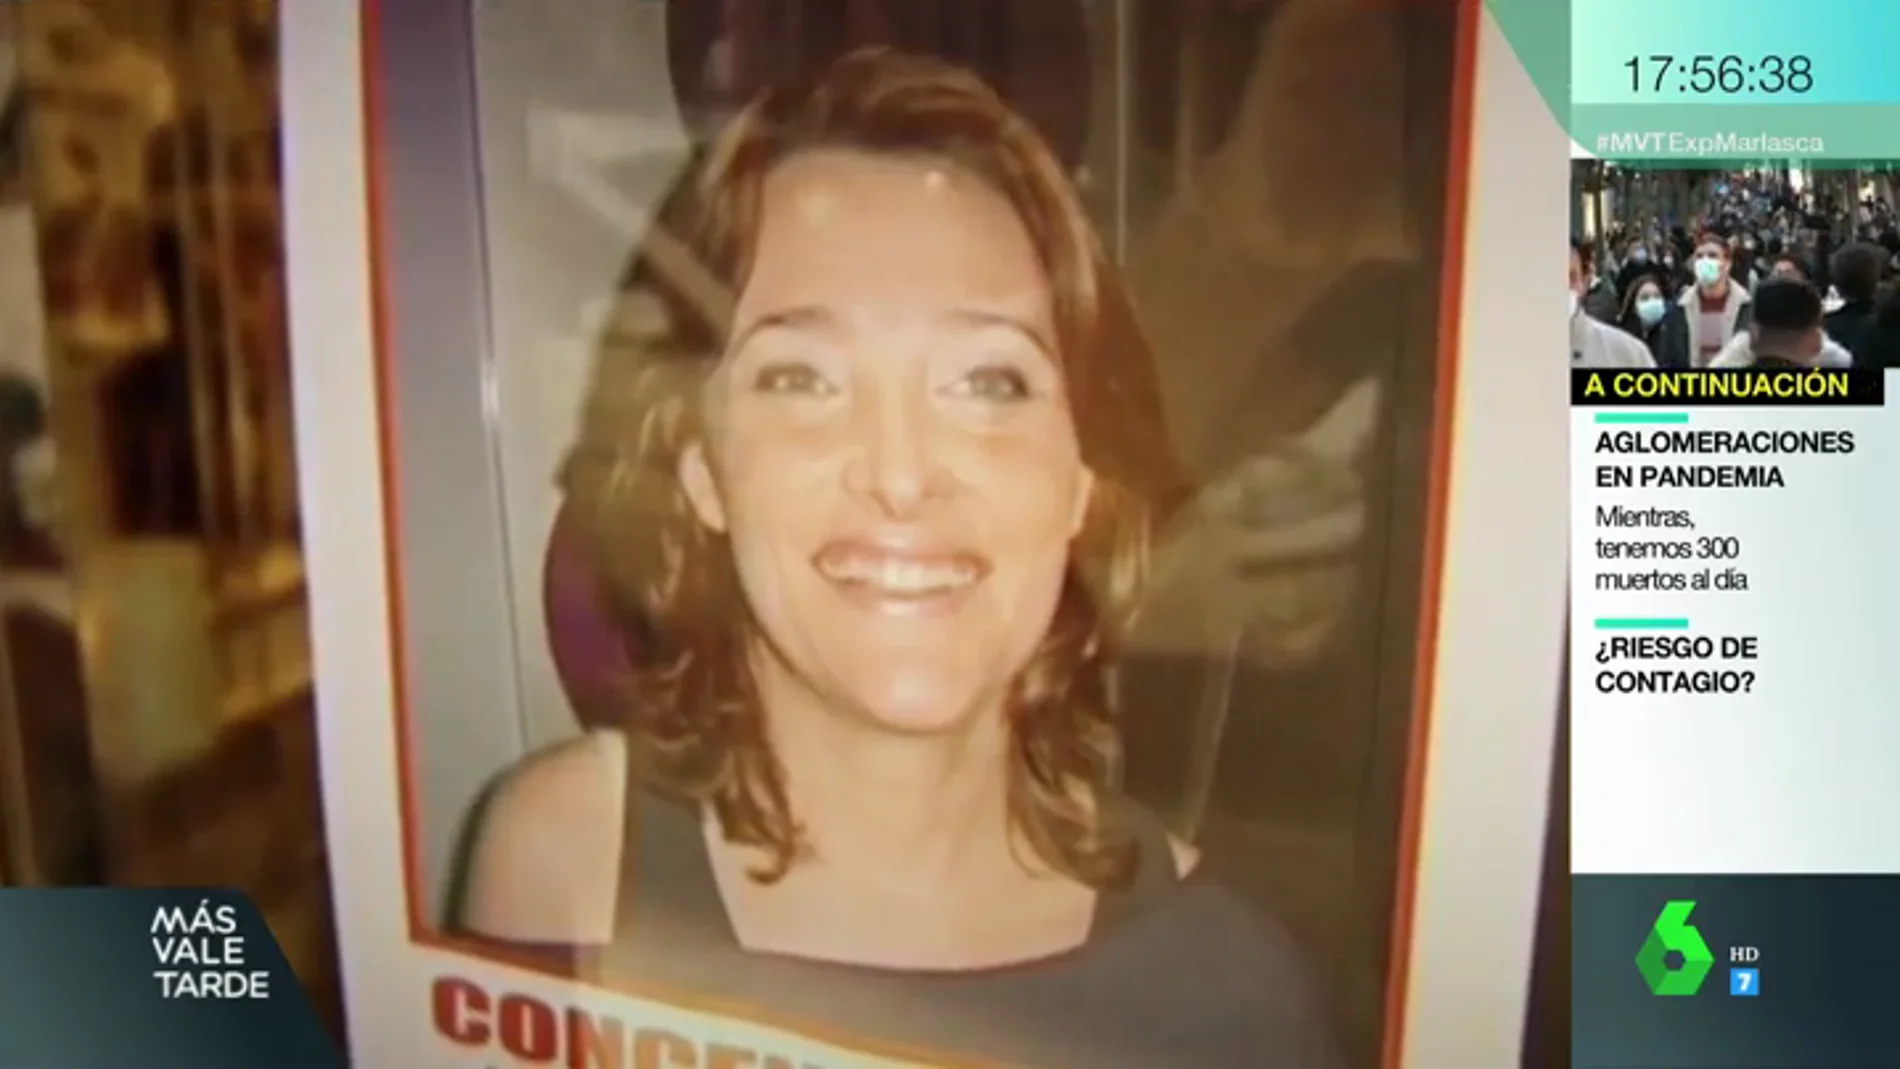 ¿Qué pasó con Sonia Iglesias? El juzgado inicia los trámites para declararla muerta 10 años después de desaparecer